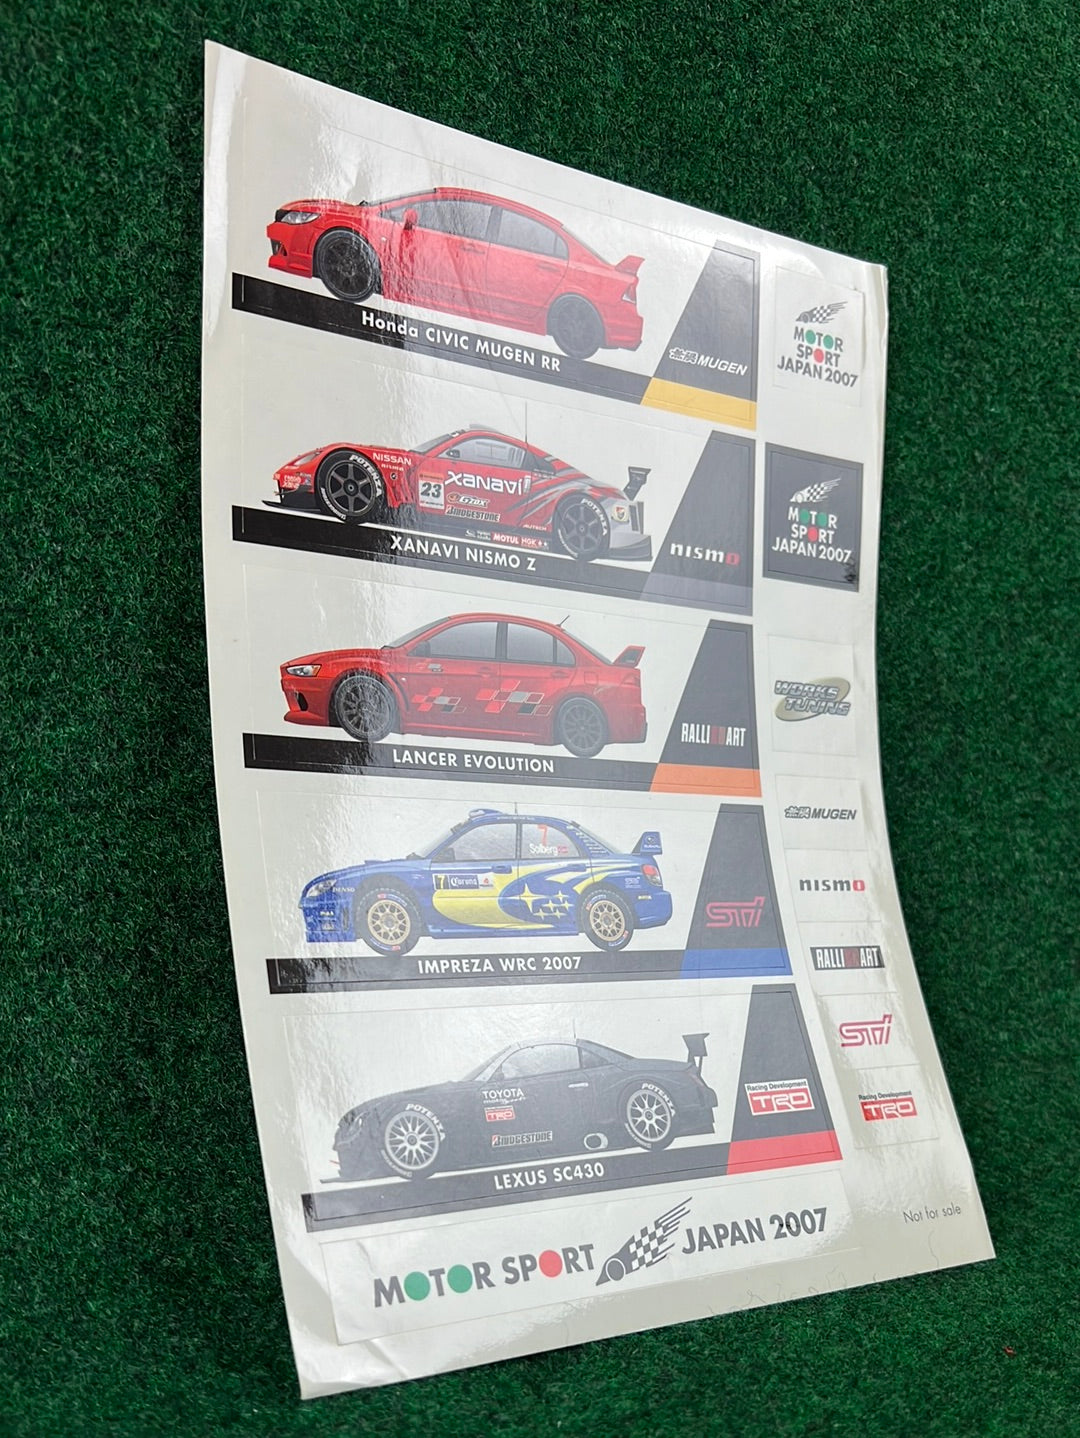 Motor Sport Japan 2007 Sticker Sheet (1)